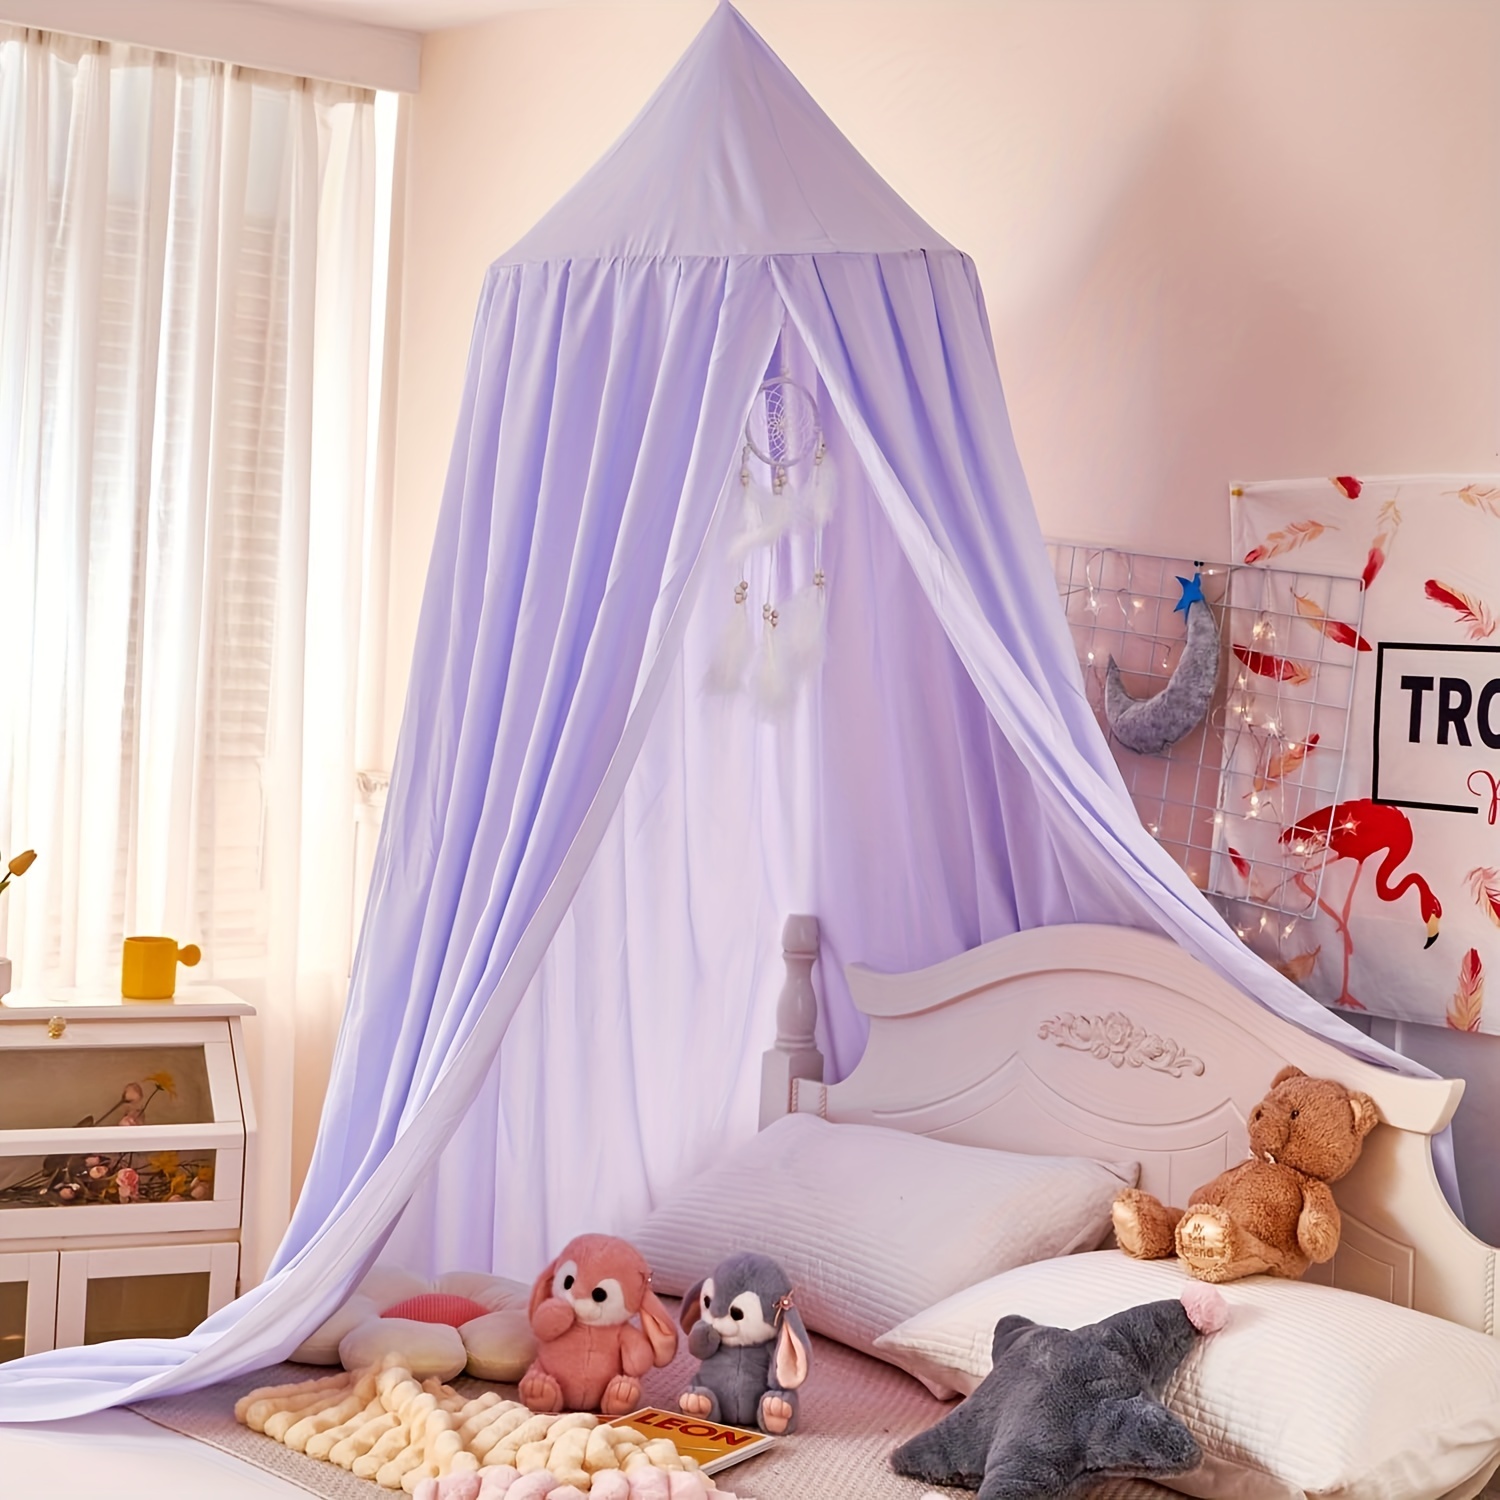 Tienda de campaña para cuna de bebé, toldo para cama de bebé, mosquitera,  red emergente, protección contra mosquitos, color blanco